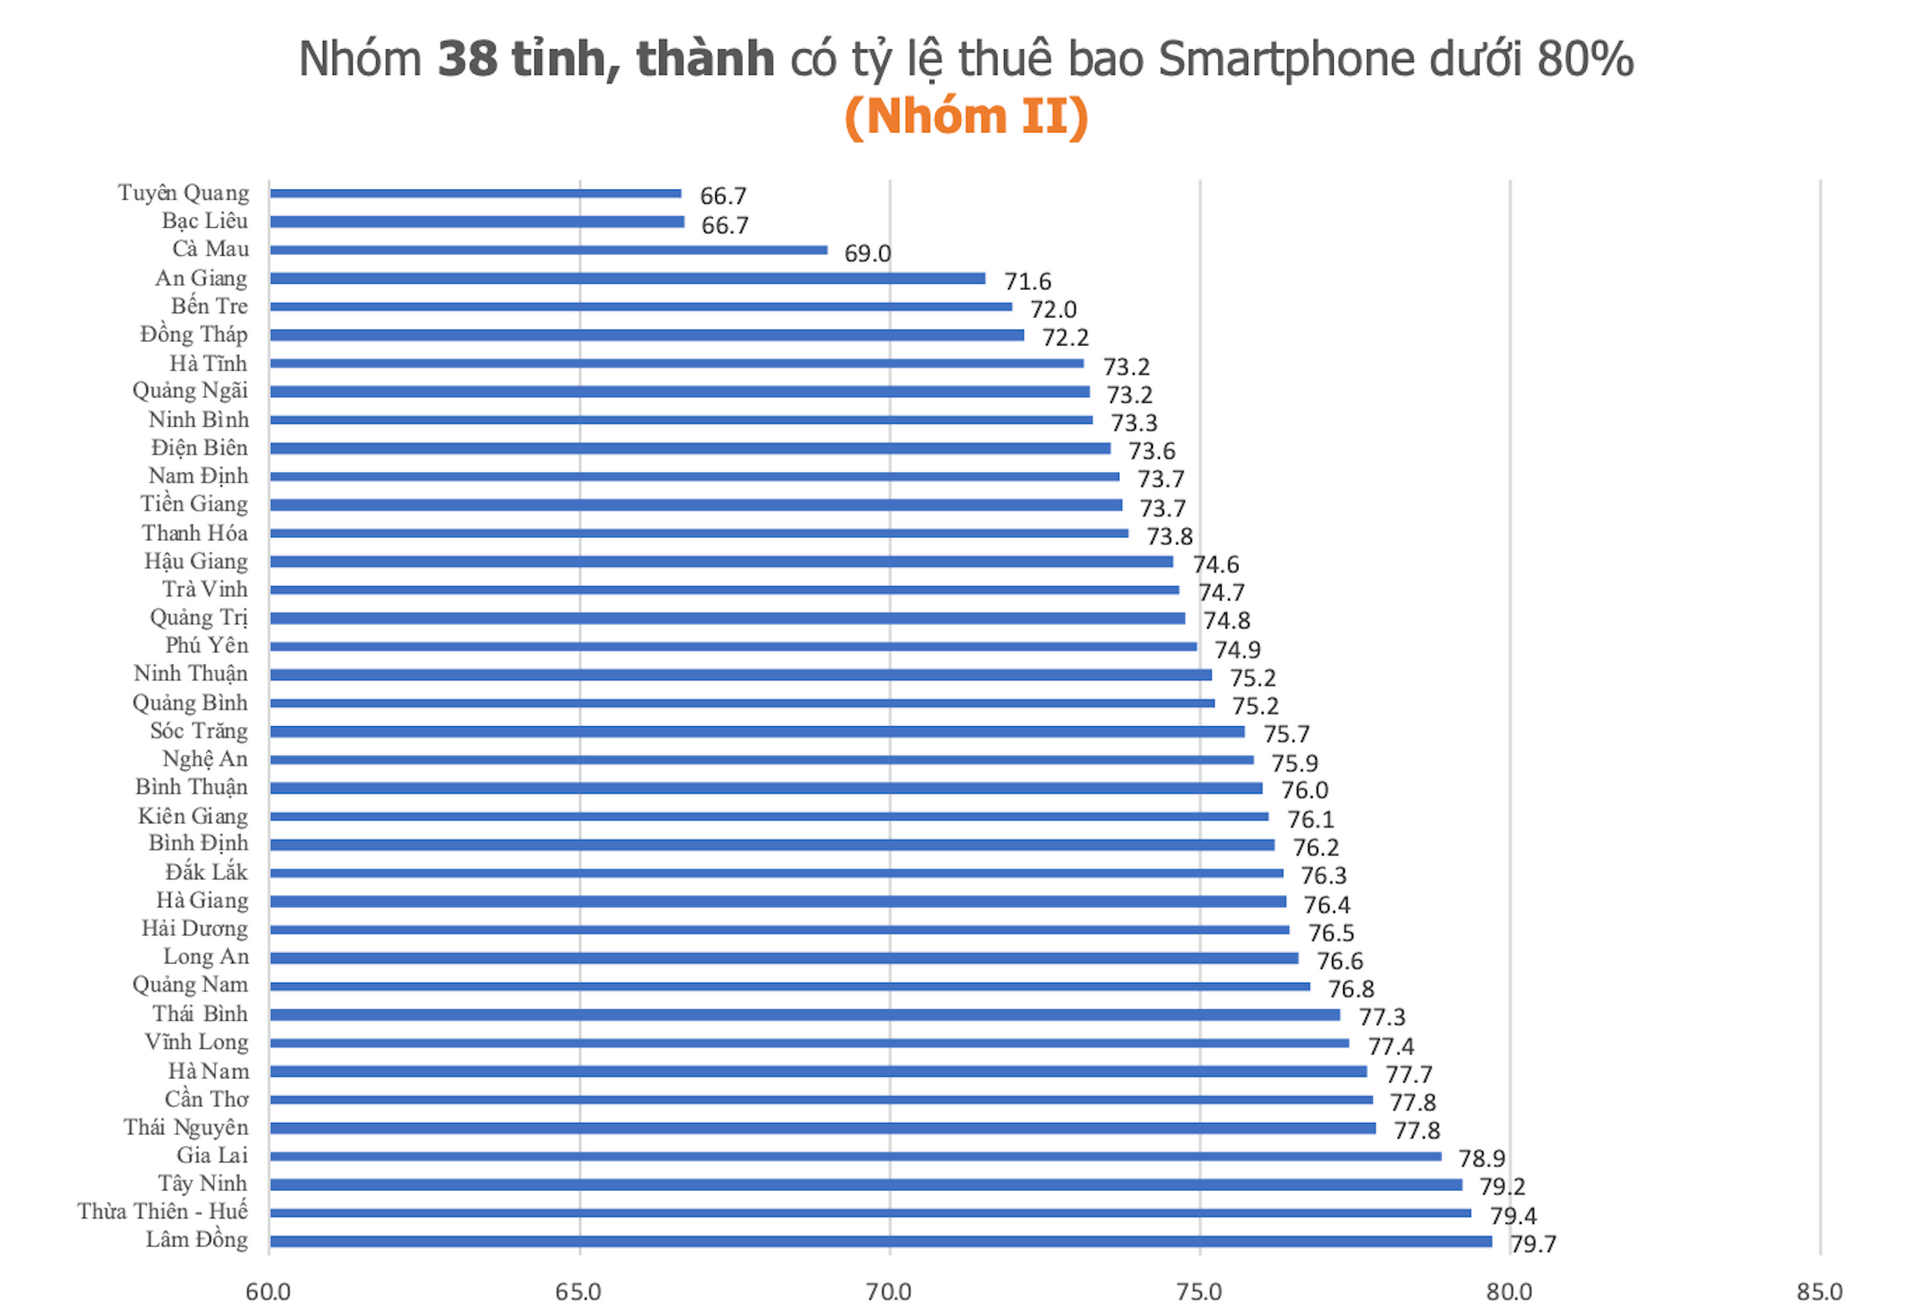 Tỷ lệ thuê bao smartphone tại các tỉnh, thành (Nguồn: Cục Viễn thông)